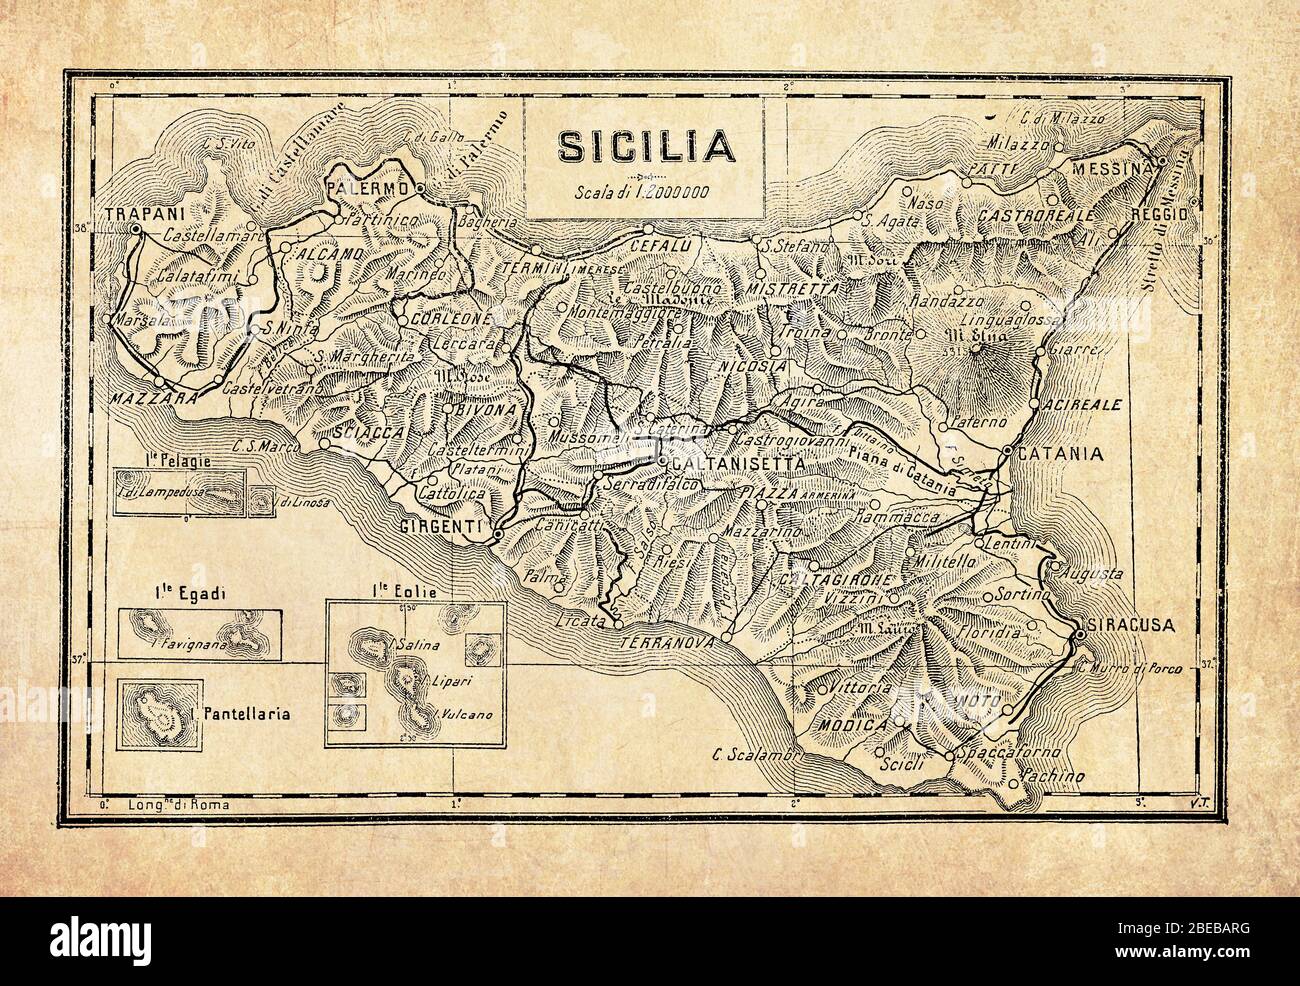 Antike Landkarte von Sizilien die größte Insel im Mittelmeer und eine der 20 Regionen Italiens mit den umliegenden kleineren Inseln, mit geographischen italienischen Namen und Beschreibungen Stockfoto